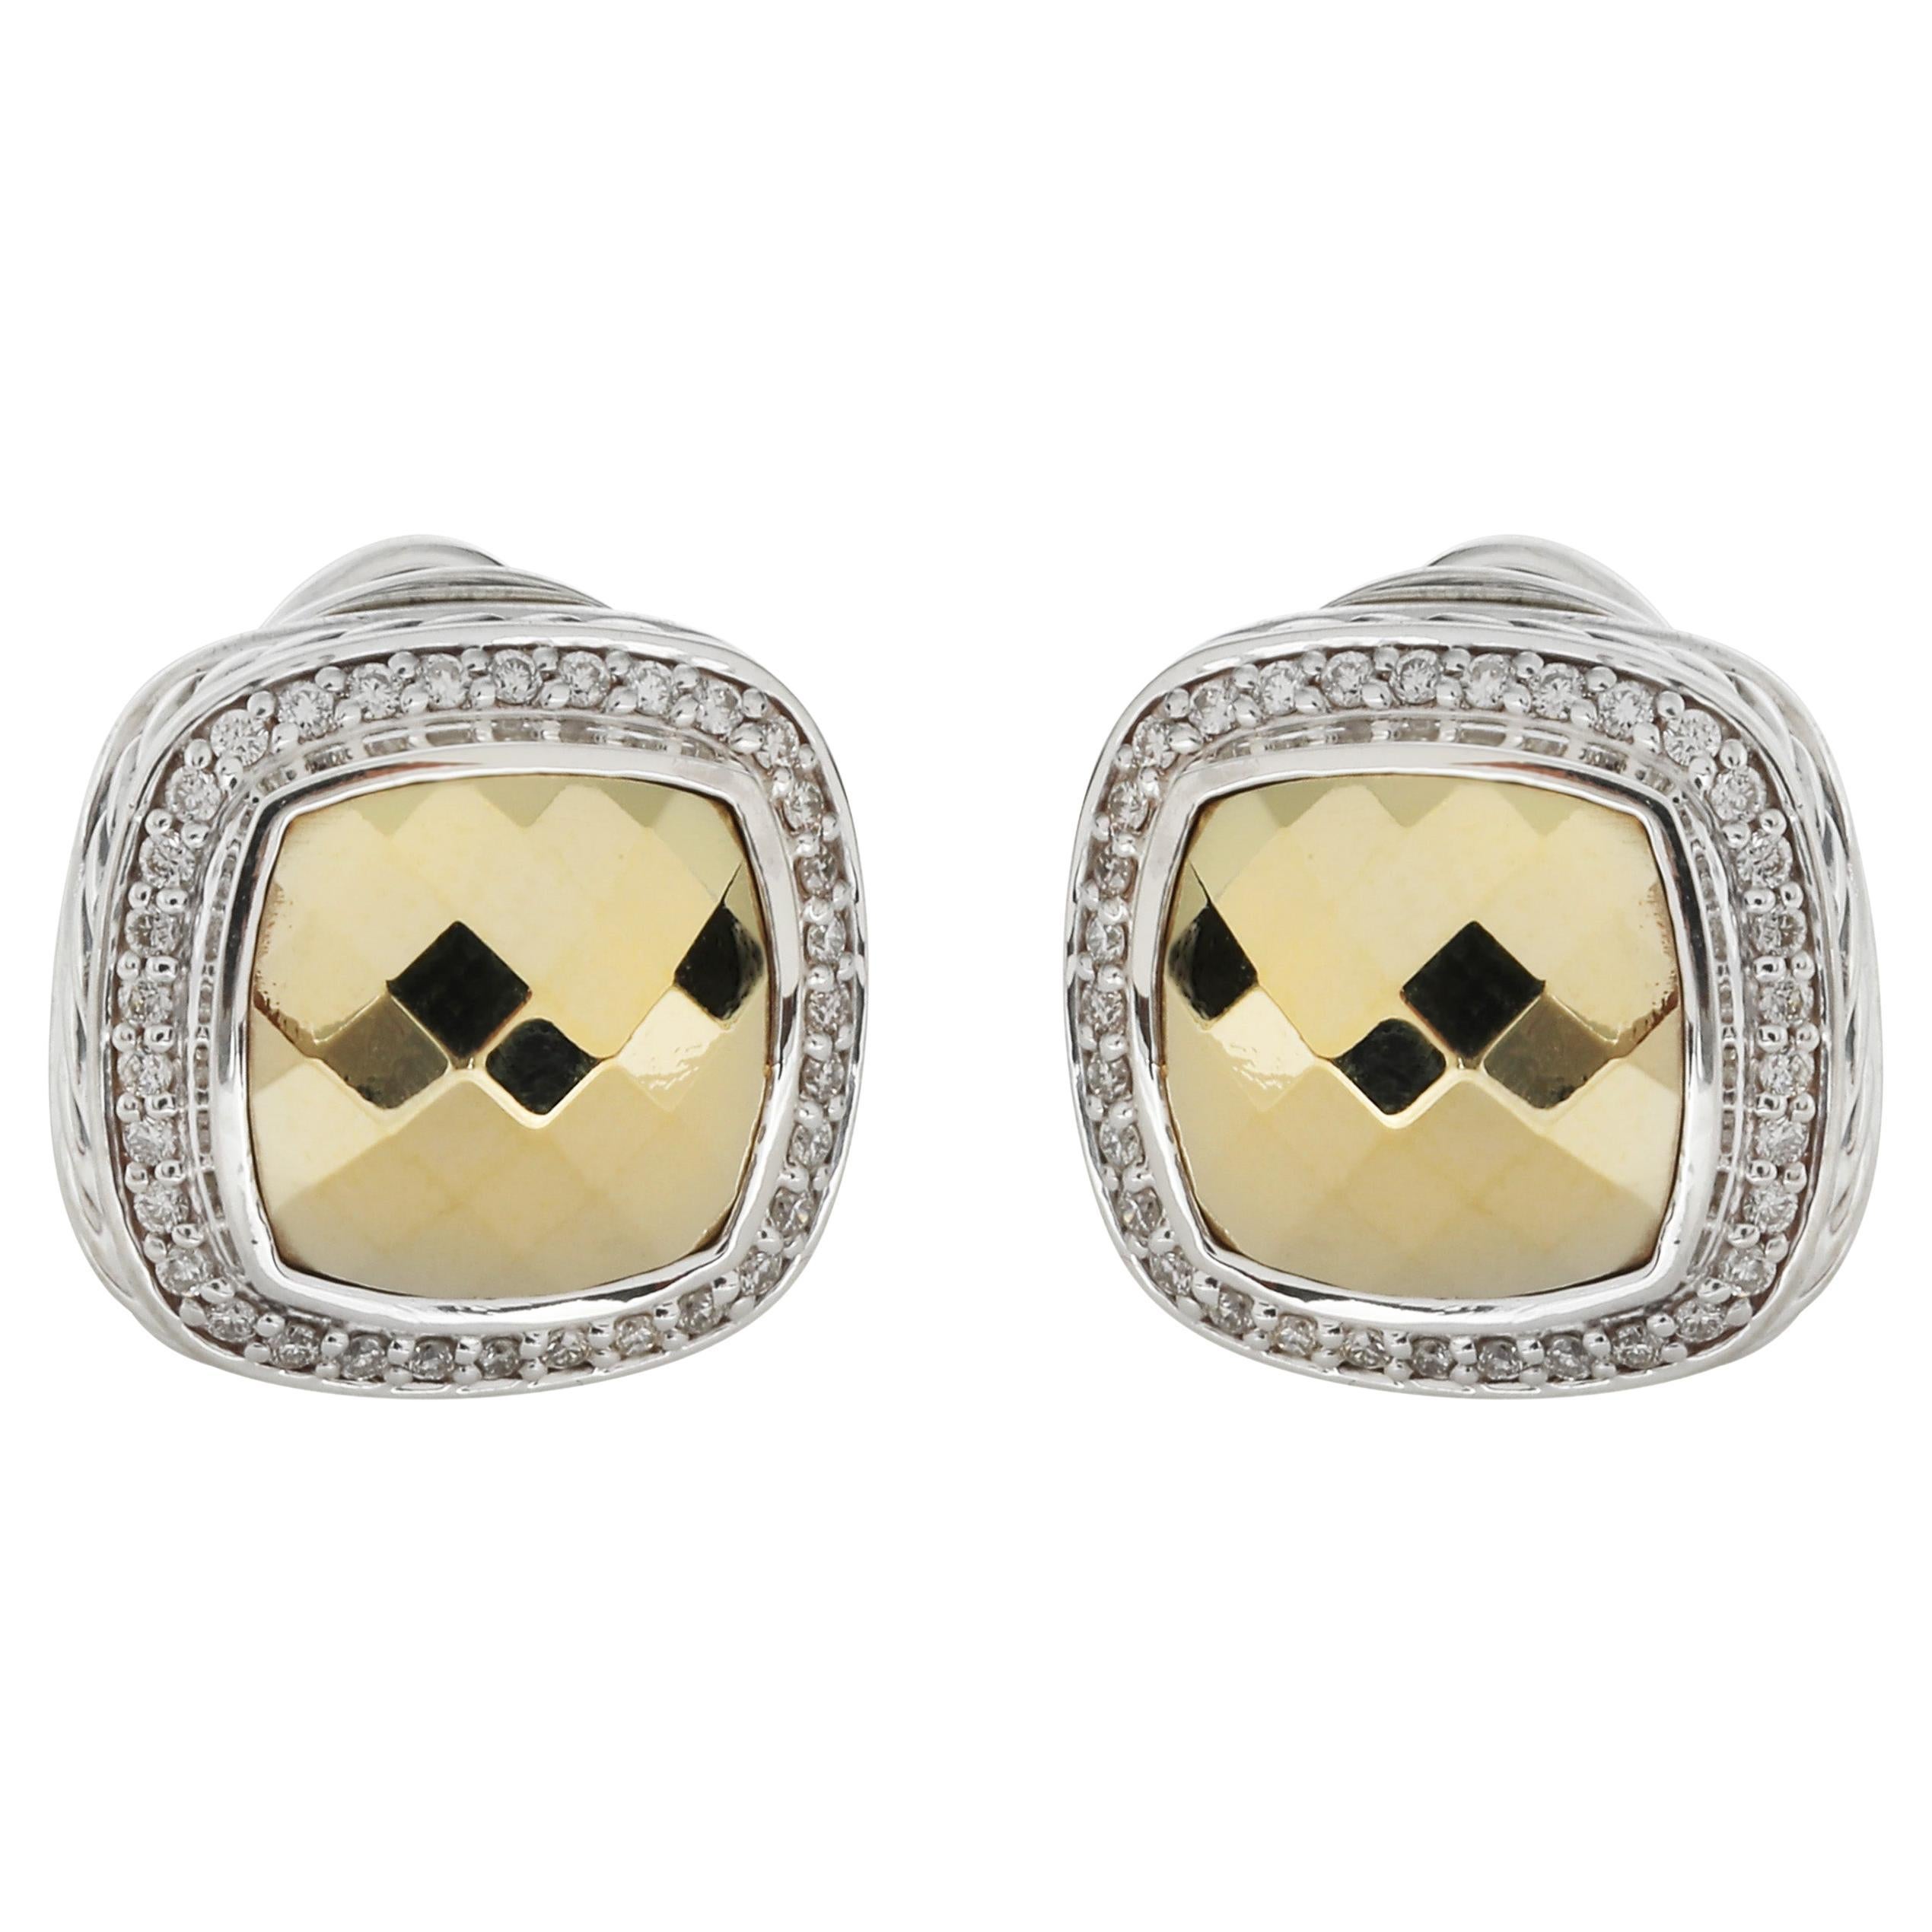 David Yurman Albion Diamond Earrings in 18K Yellow Gold/Sterling Silver 0.5 CTW